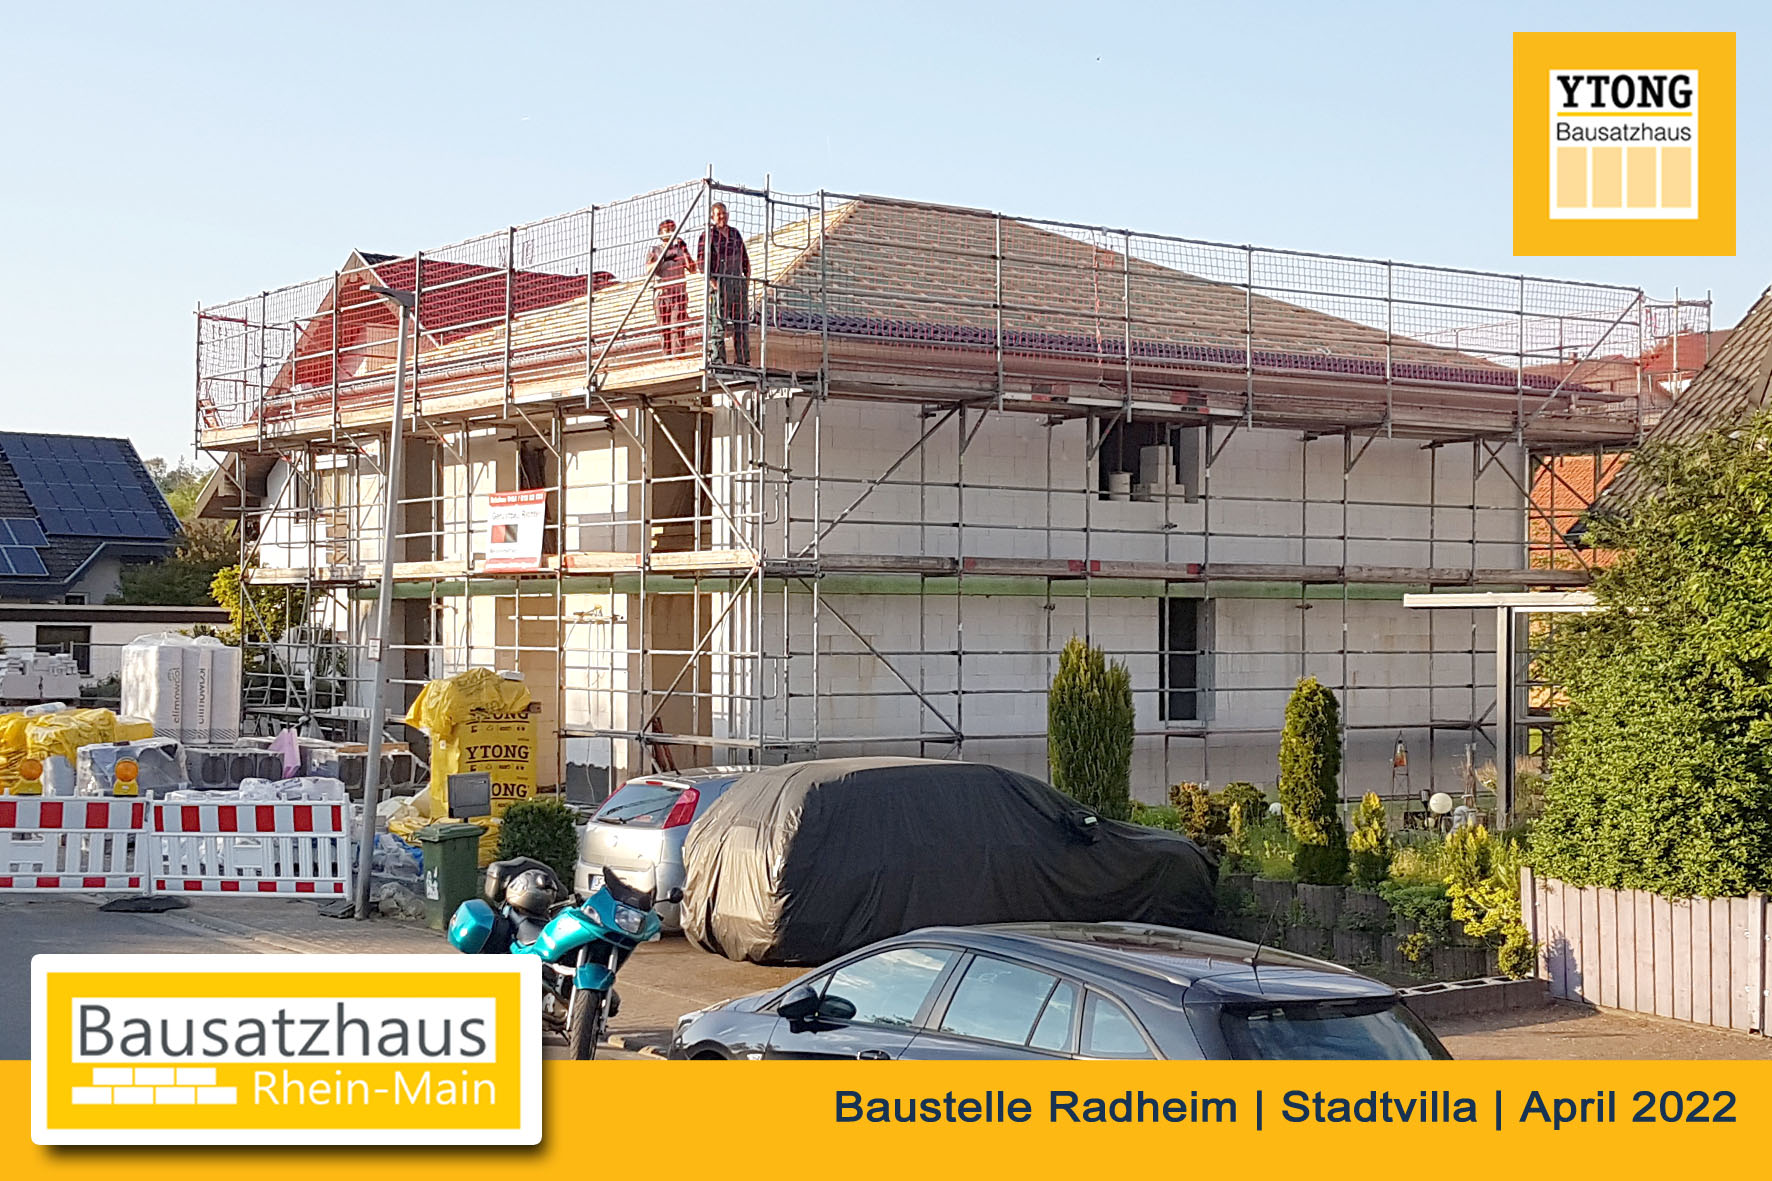 Marcus Kurz Bausatzhaus Rhein-Main, Ytong Bausatzhaus, Selbstbau, Gross-Umstadt, Messel